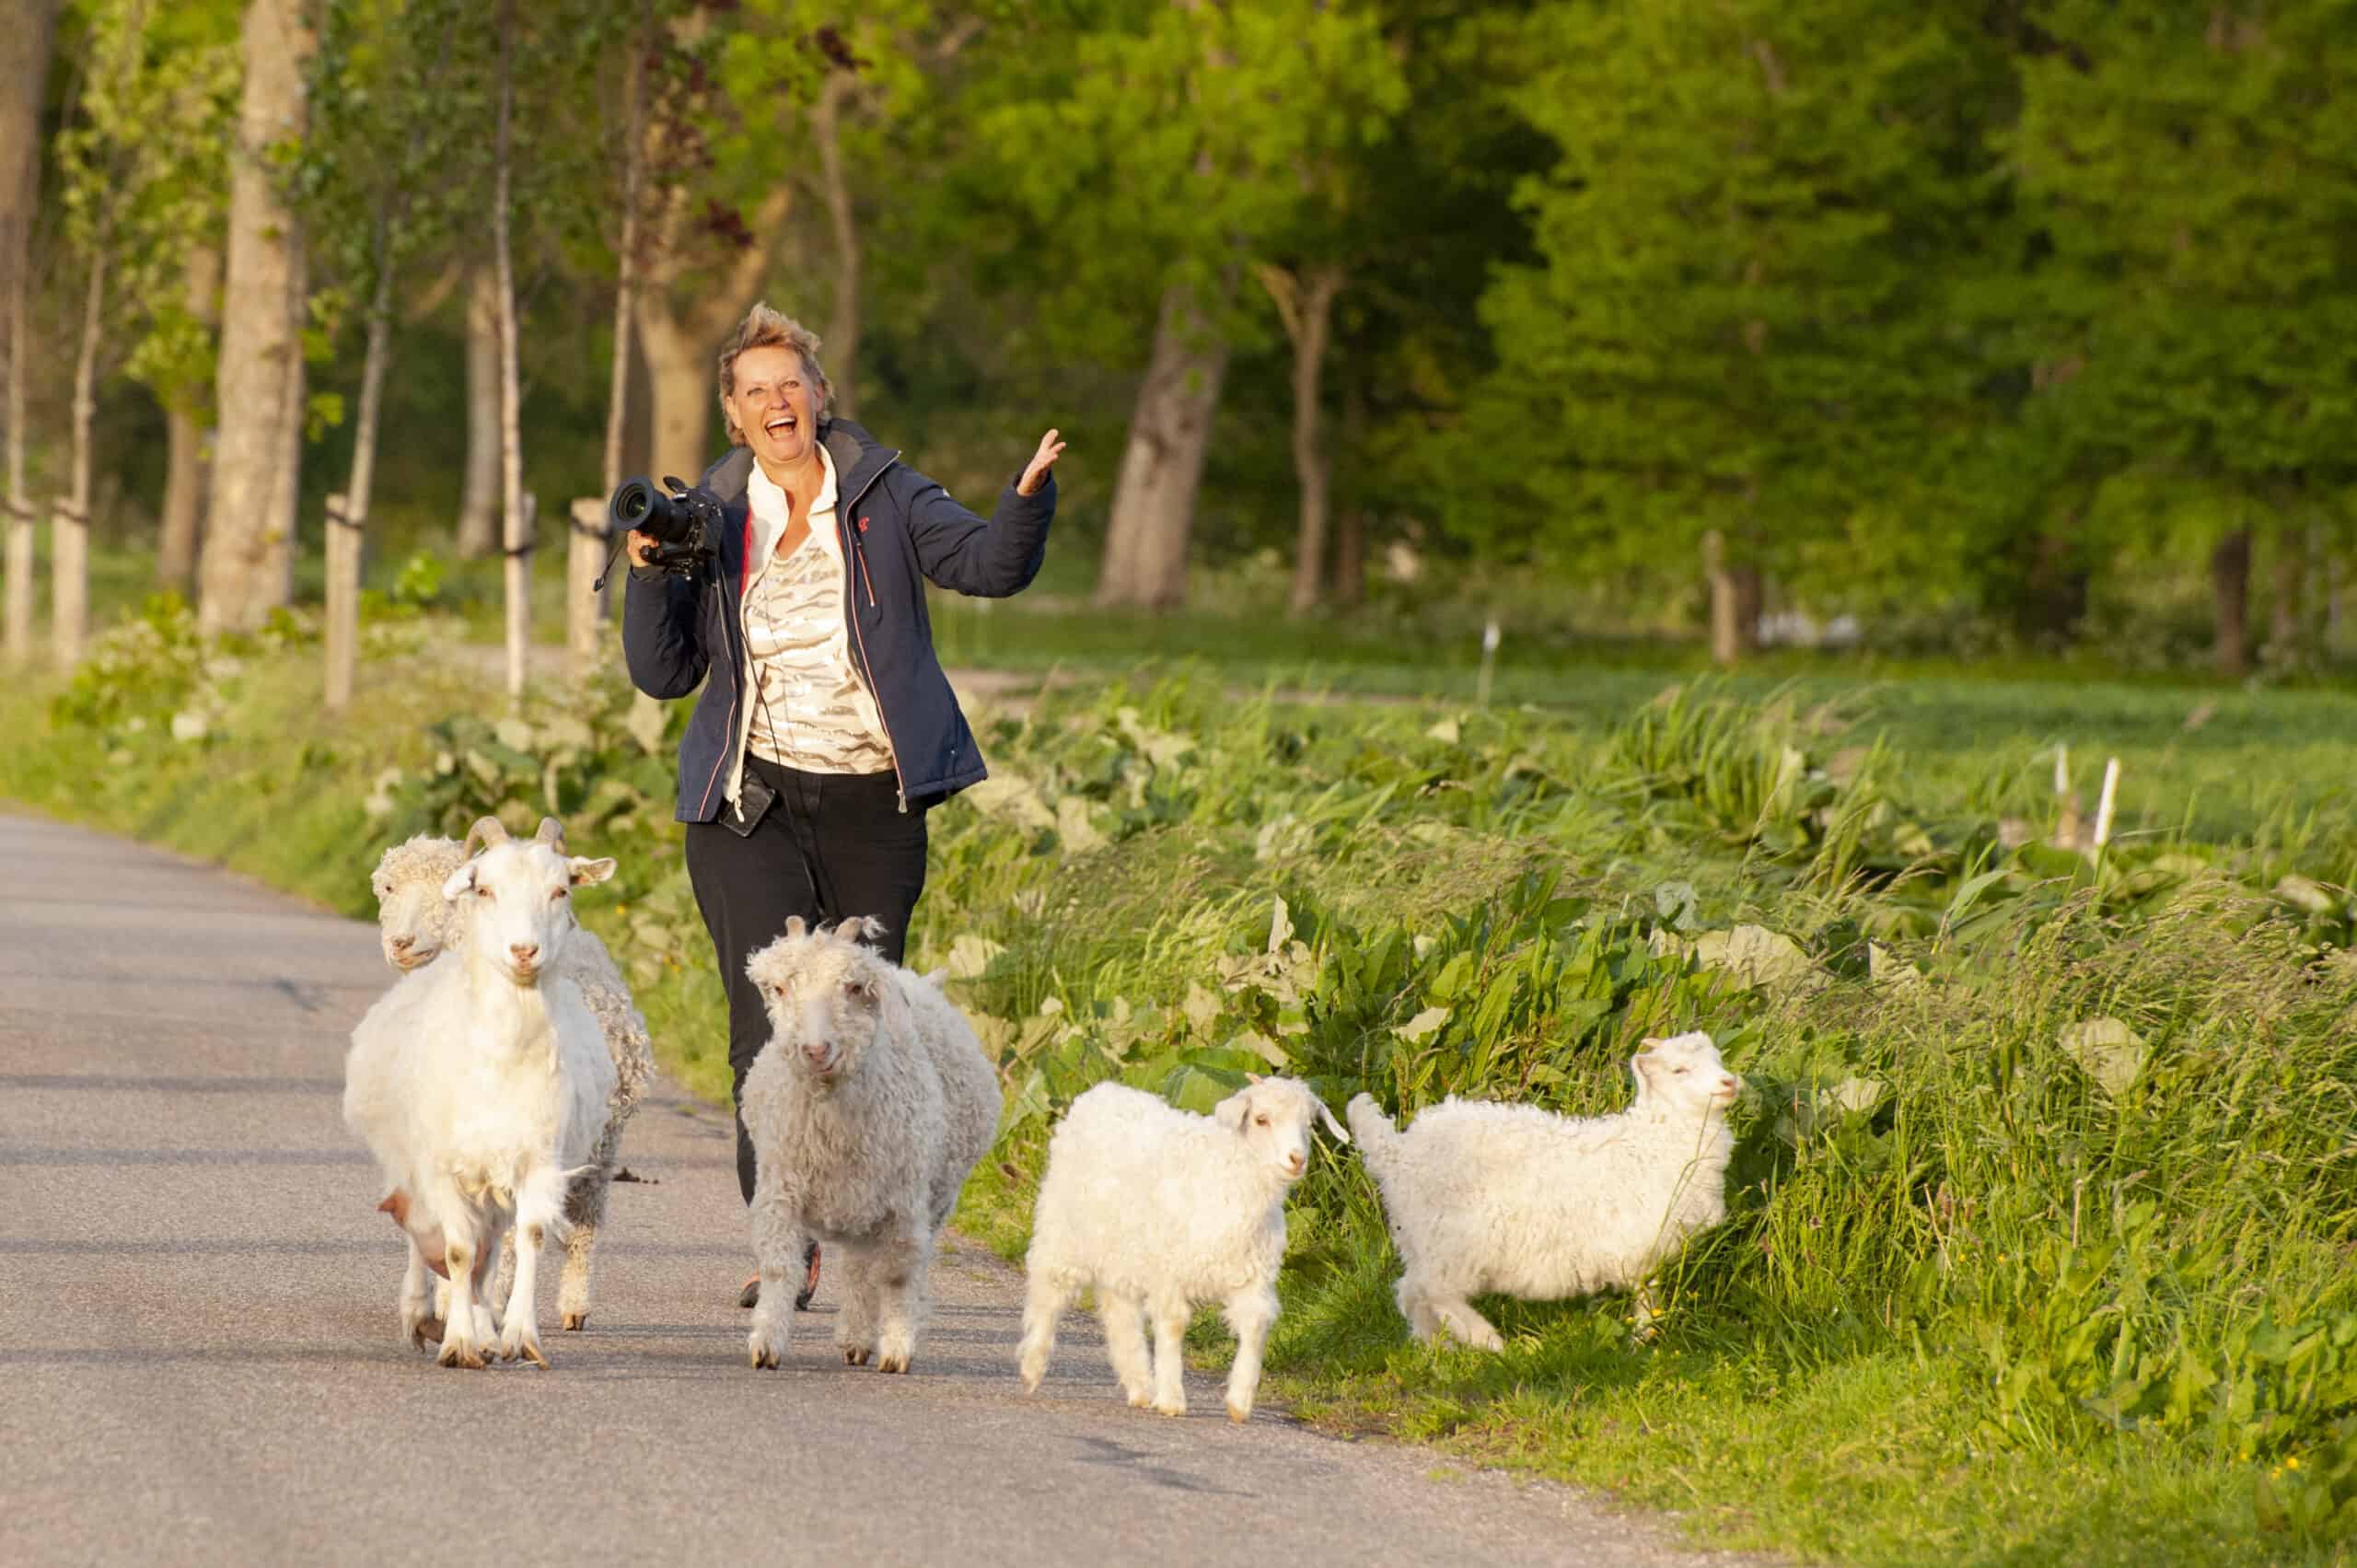 Onze fotografen vertellen - Yolanda tussen de schapen